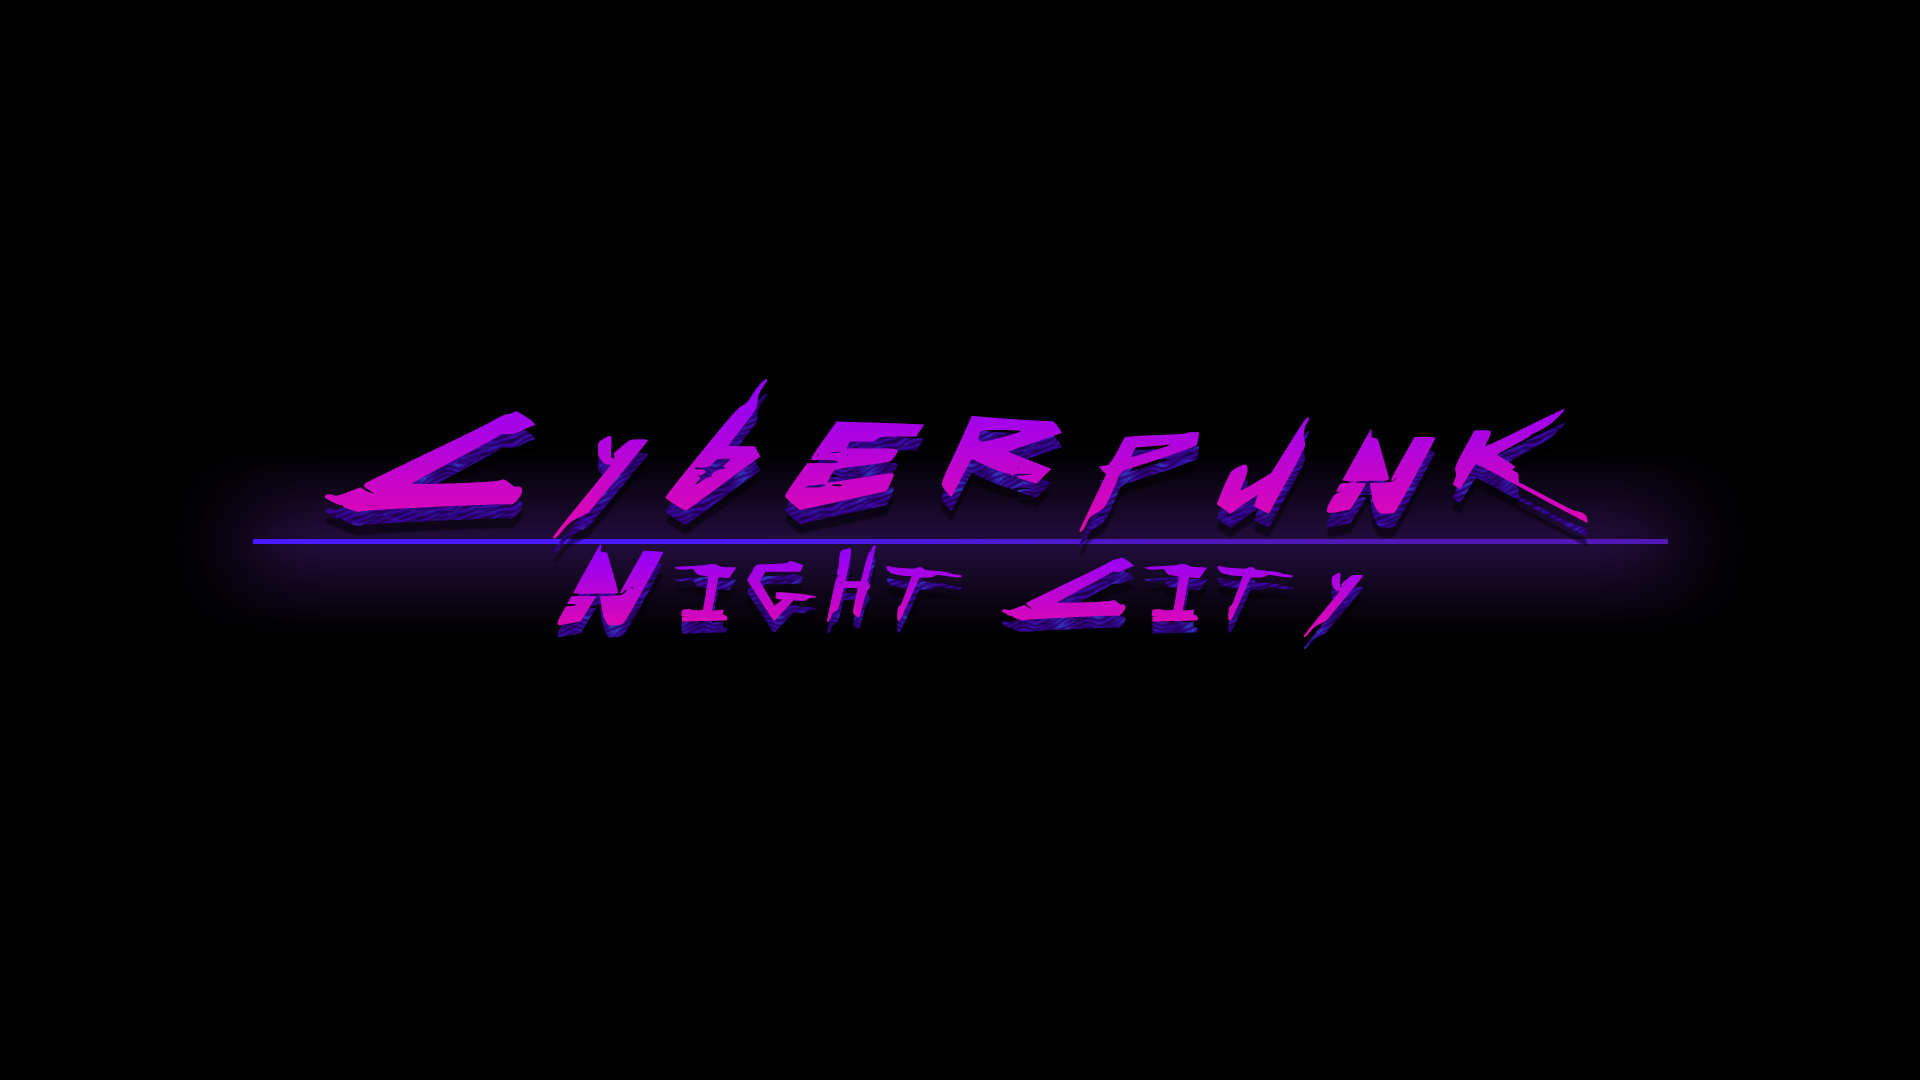 Cyberpunk logo animation фото 92